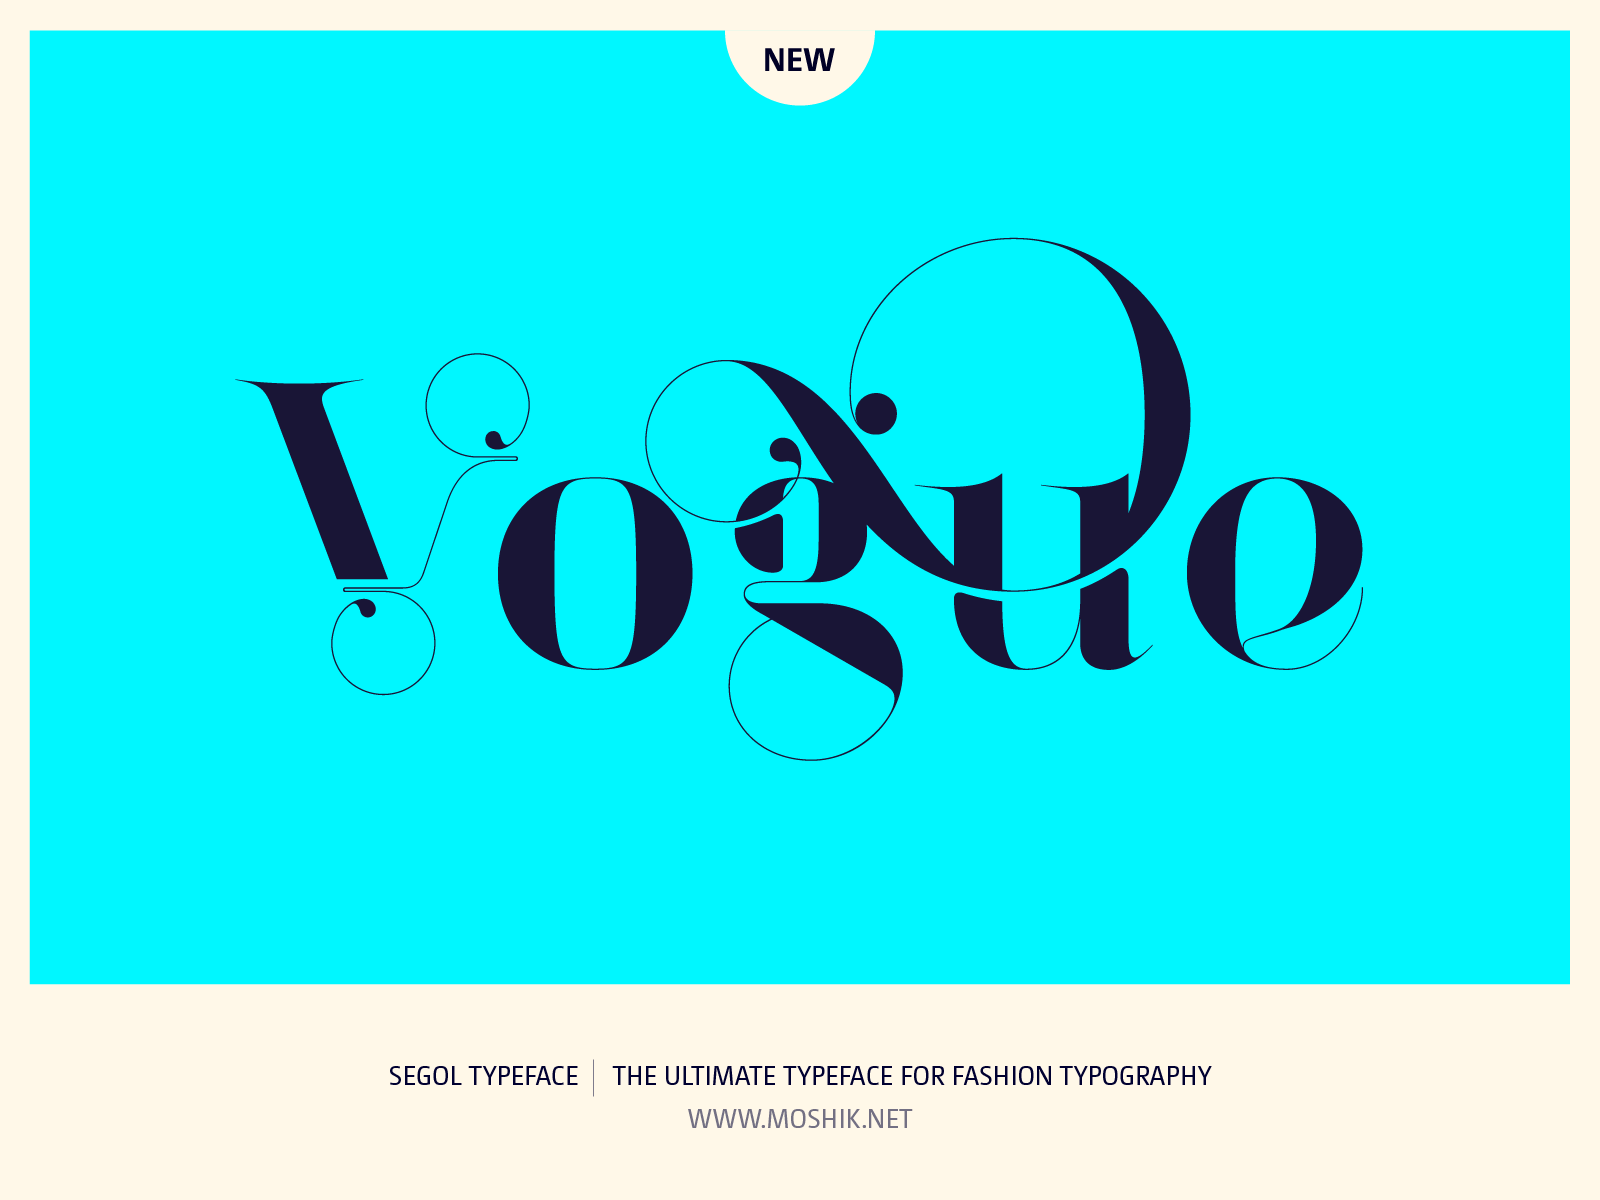 Vogue logo, Segol Typeface, fashion fonts, best fonts 2021, best fonts for logos, sexy fonts, sexy logos, Vogue fonts, Moshik Nadav, Fashion magazine fonts, Must have fonts